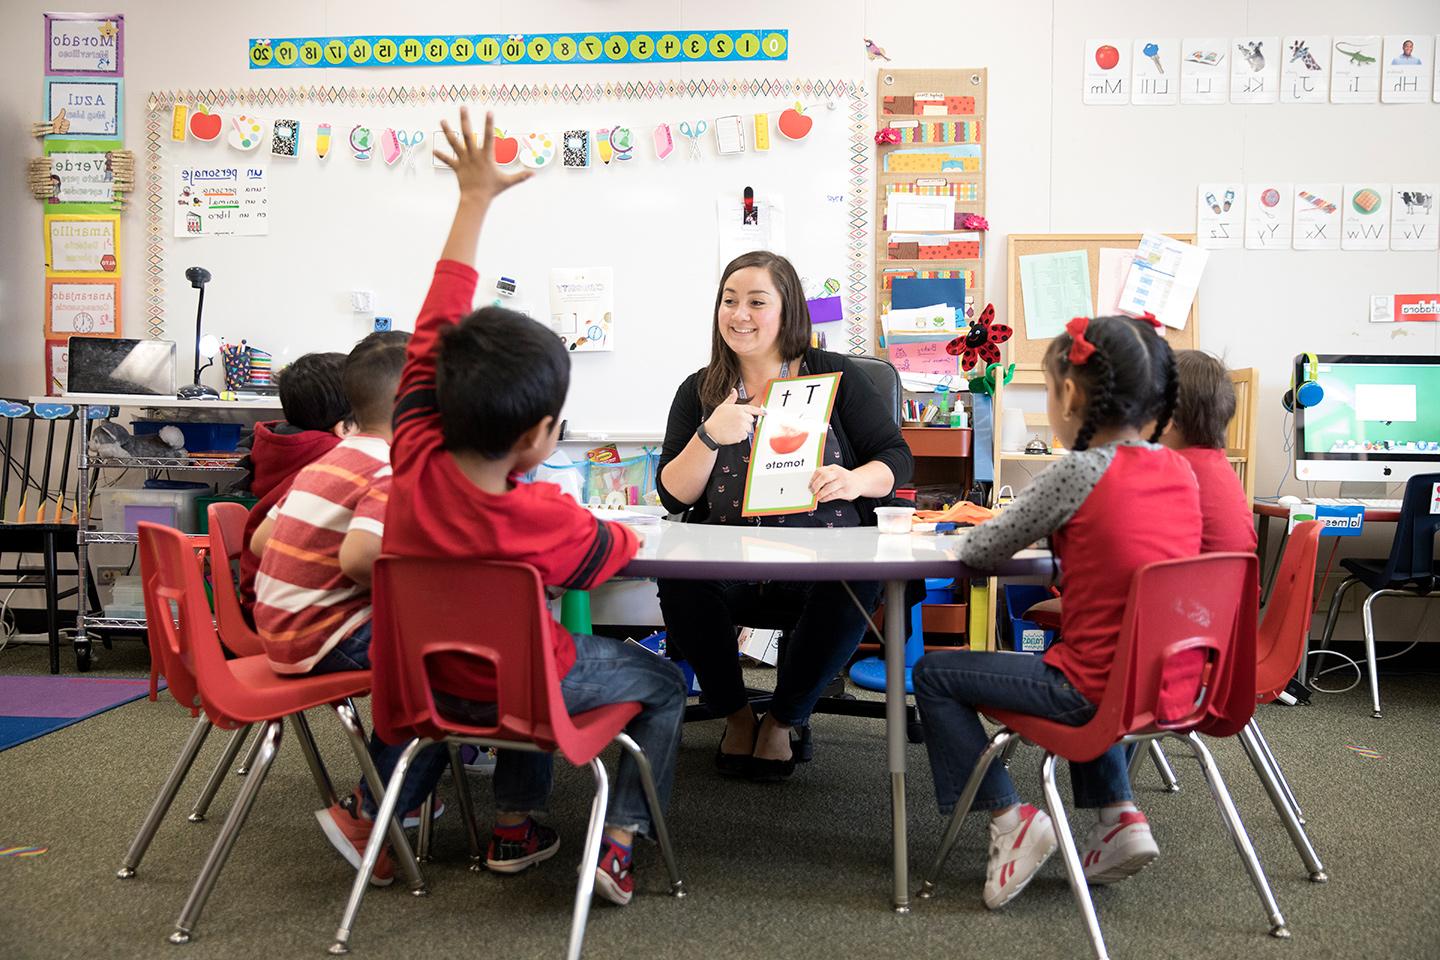 小学老师杰奎琳·卢扬和孩子们坐在教室的桌子旁